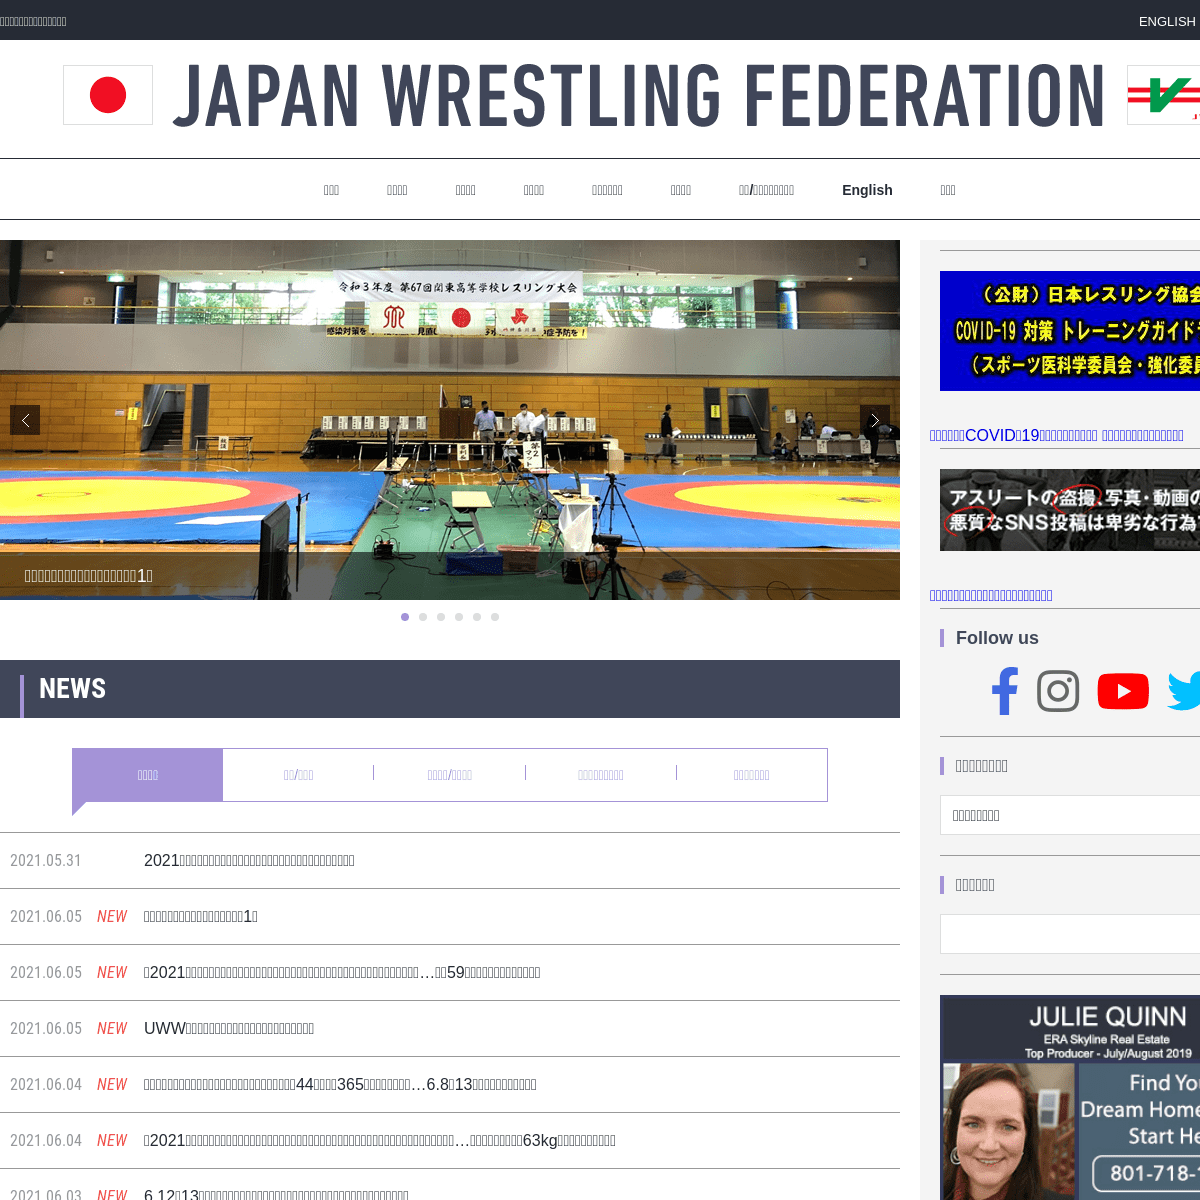 A complete backup of https://japan-wrestling.jp